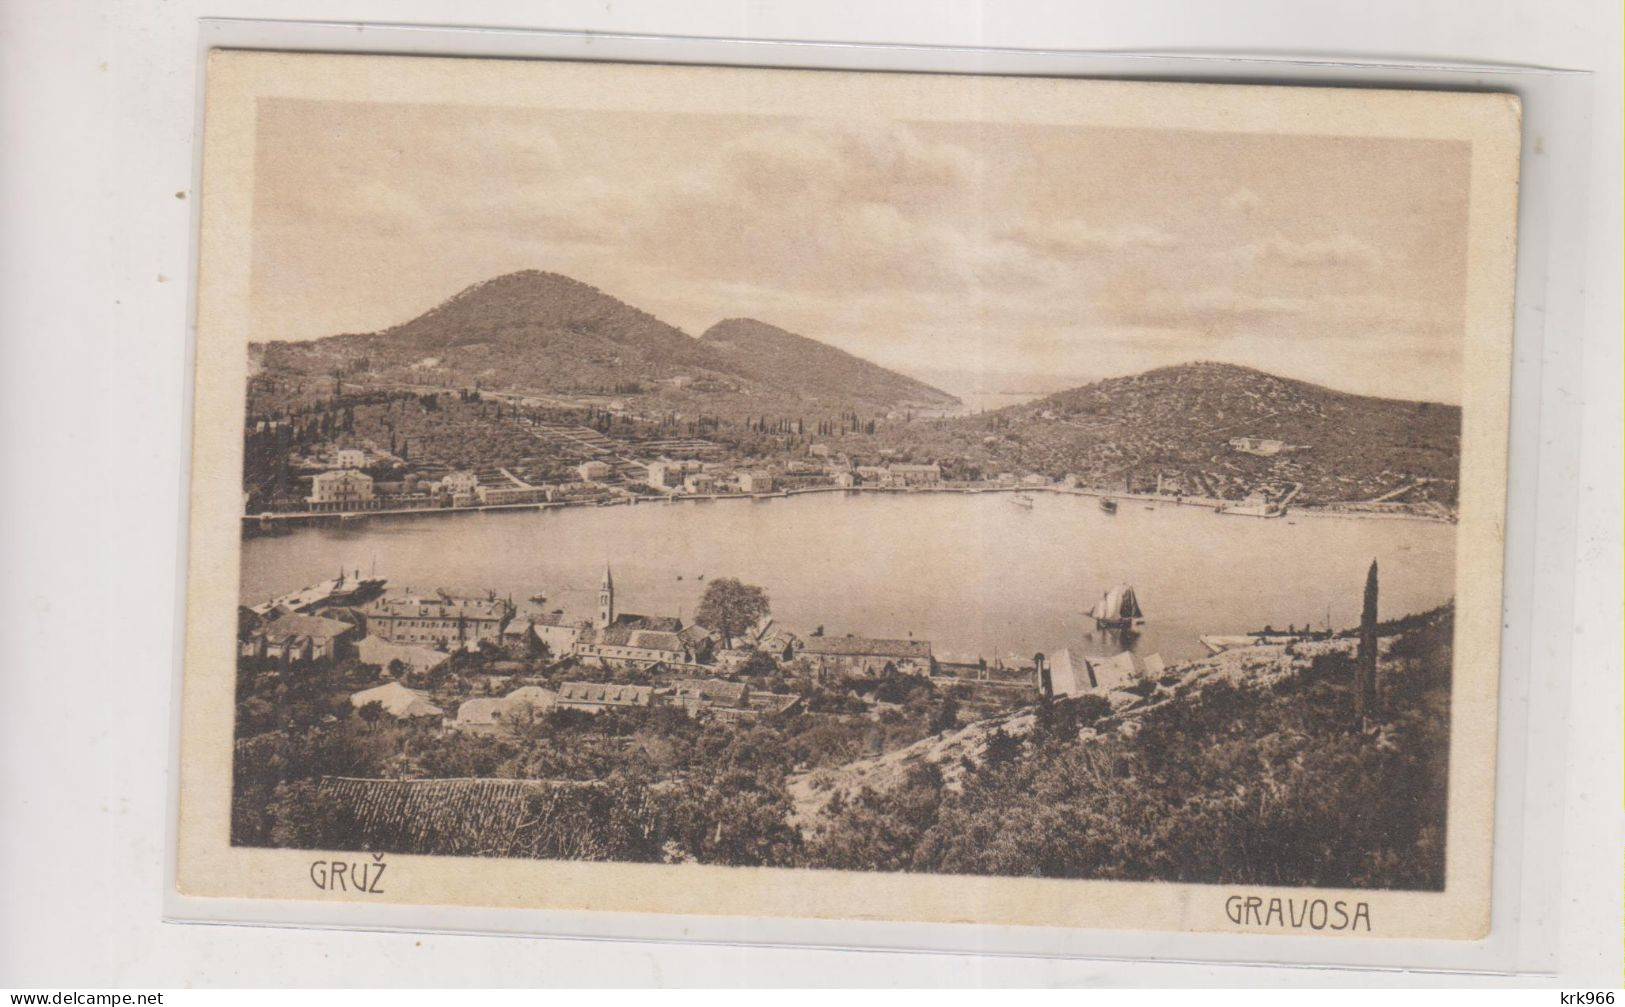 CROATIA DUBROVNIK Nice Postcard - Kroatien